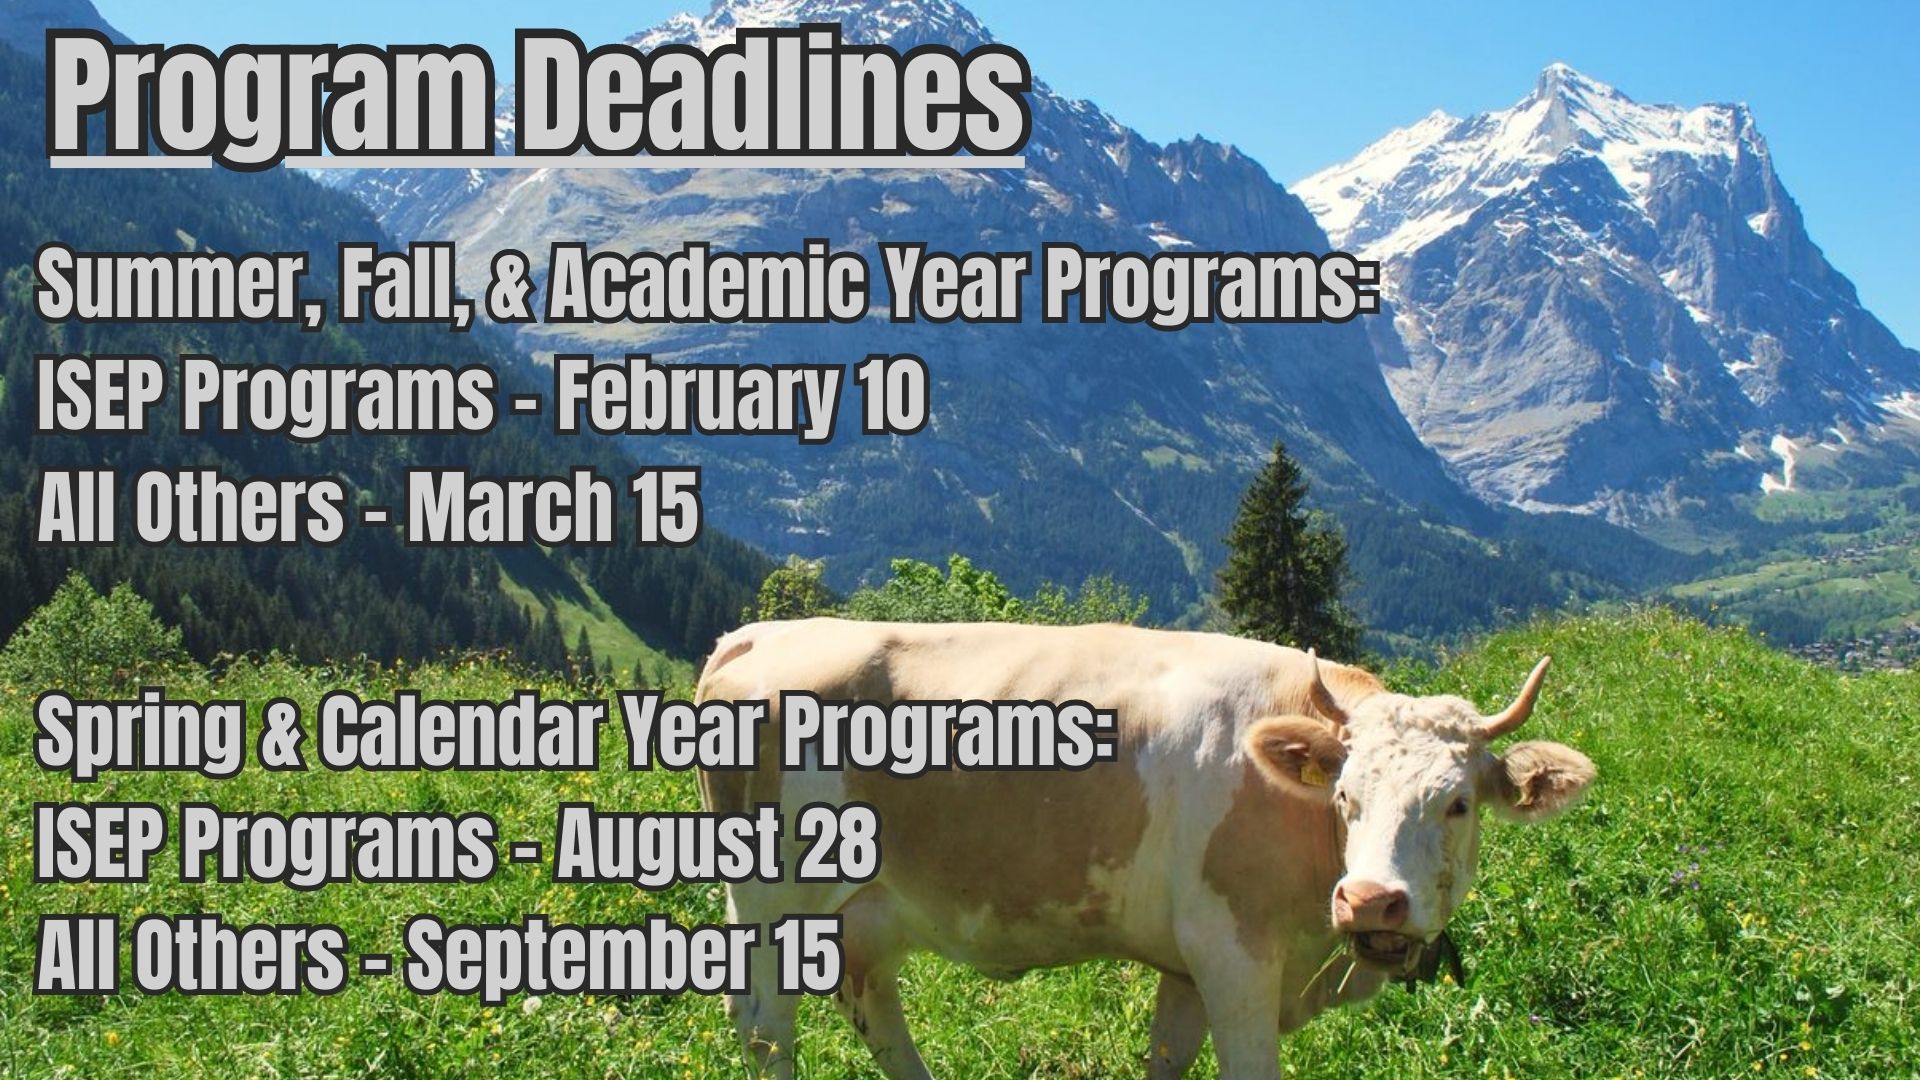 Program Deadline Banner on Advising Page